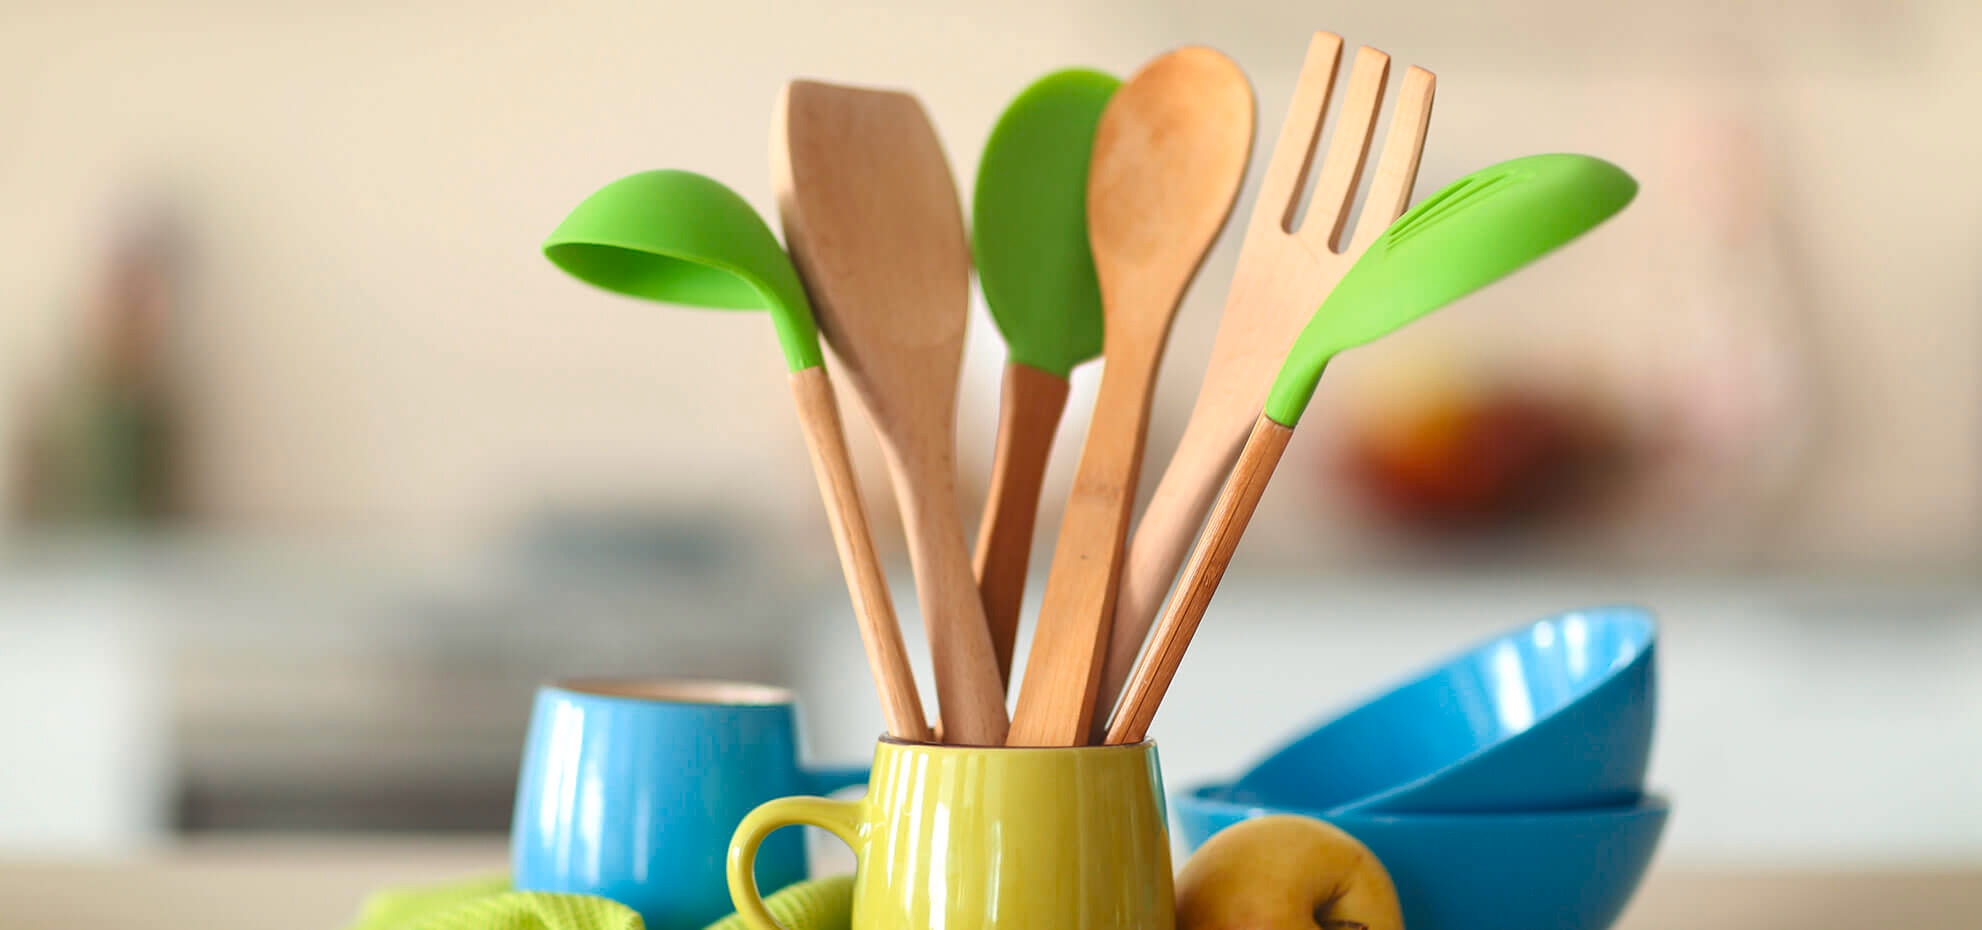 Beberapa spatula masak yang terbuat dari kayu di dalam mug hijau di atas meja dapur